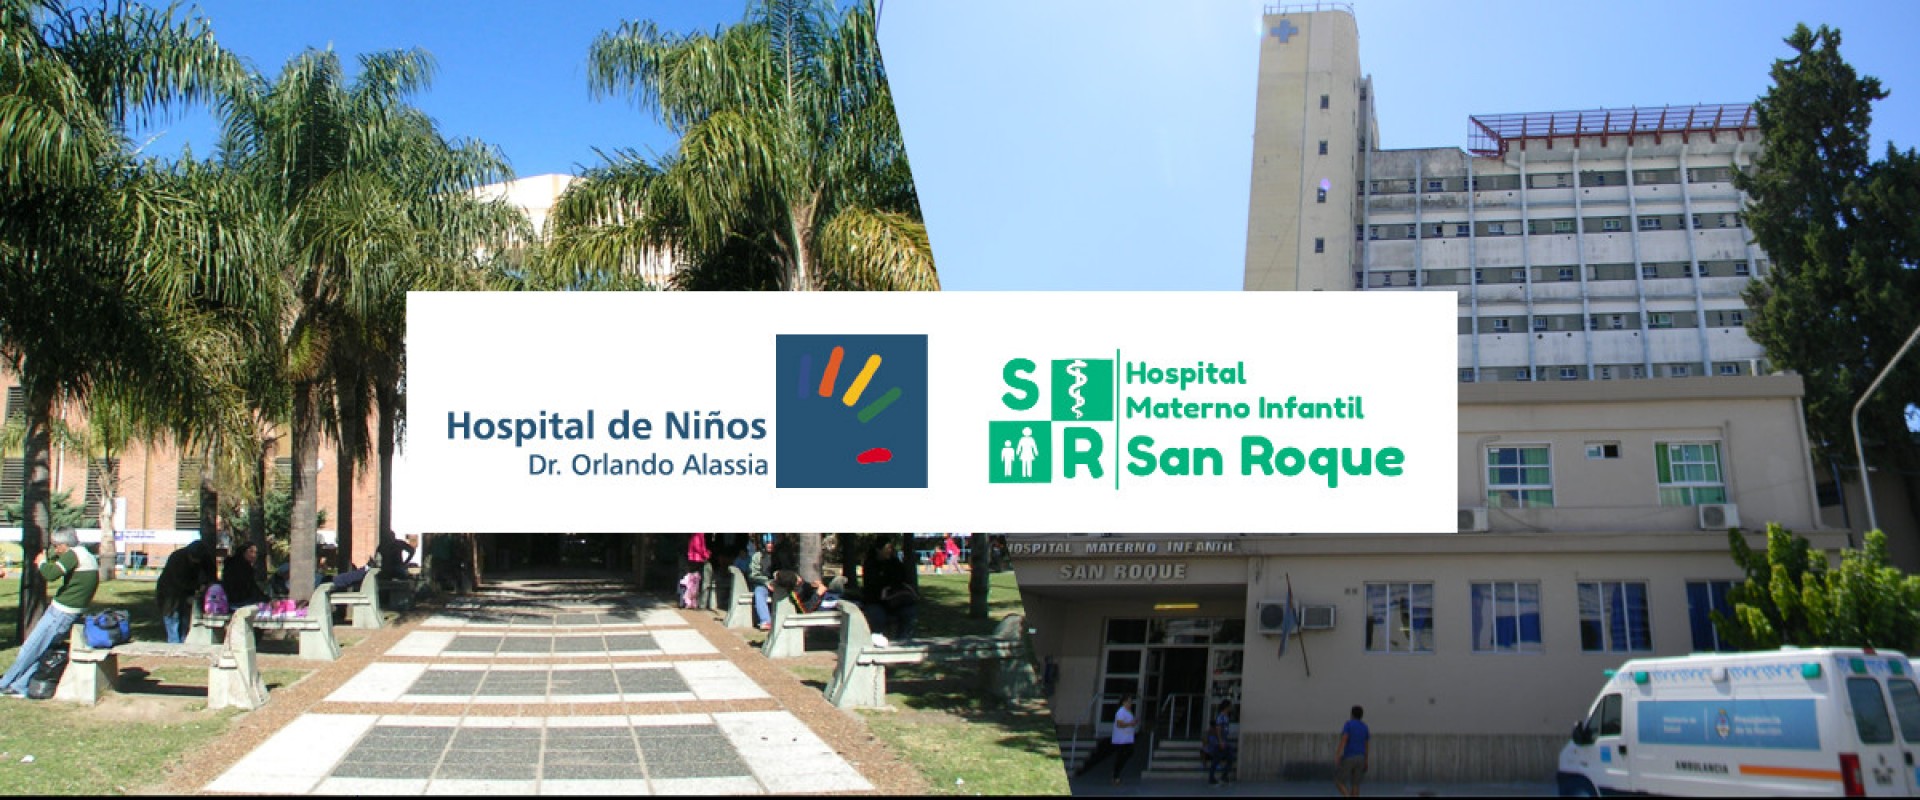 Hospital de Niños Alassia-Hospital Materno Infantil San Roque: organización de las derivaciones